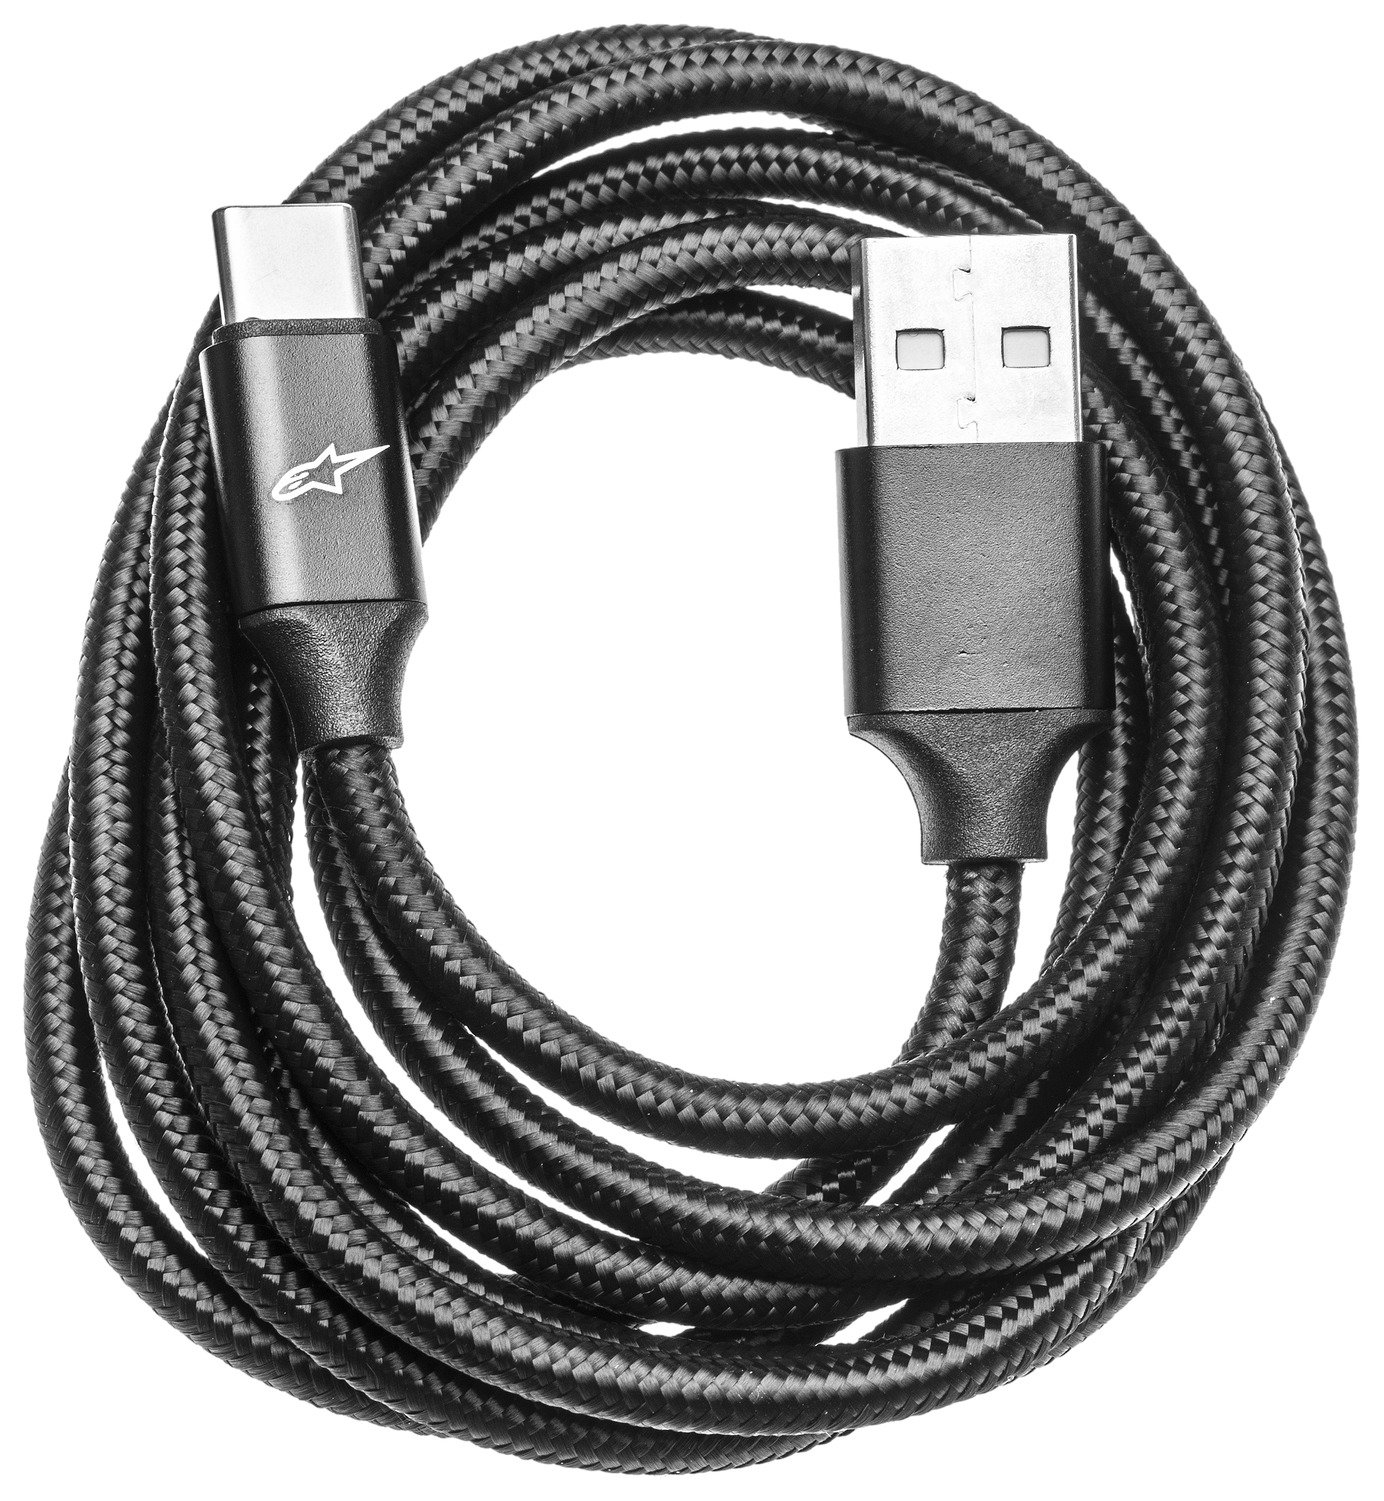 Obrázek produktu náhradní kabel nabíjení pomocí USB-C pro airbagové systémy TECH-AIR®10/3/OFF-ROAD/7X, ALPINESTARS 6999522-3-TU